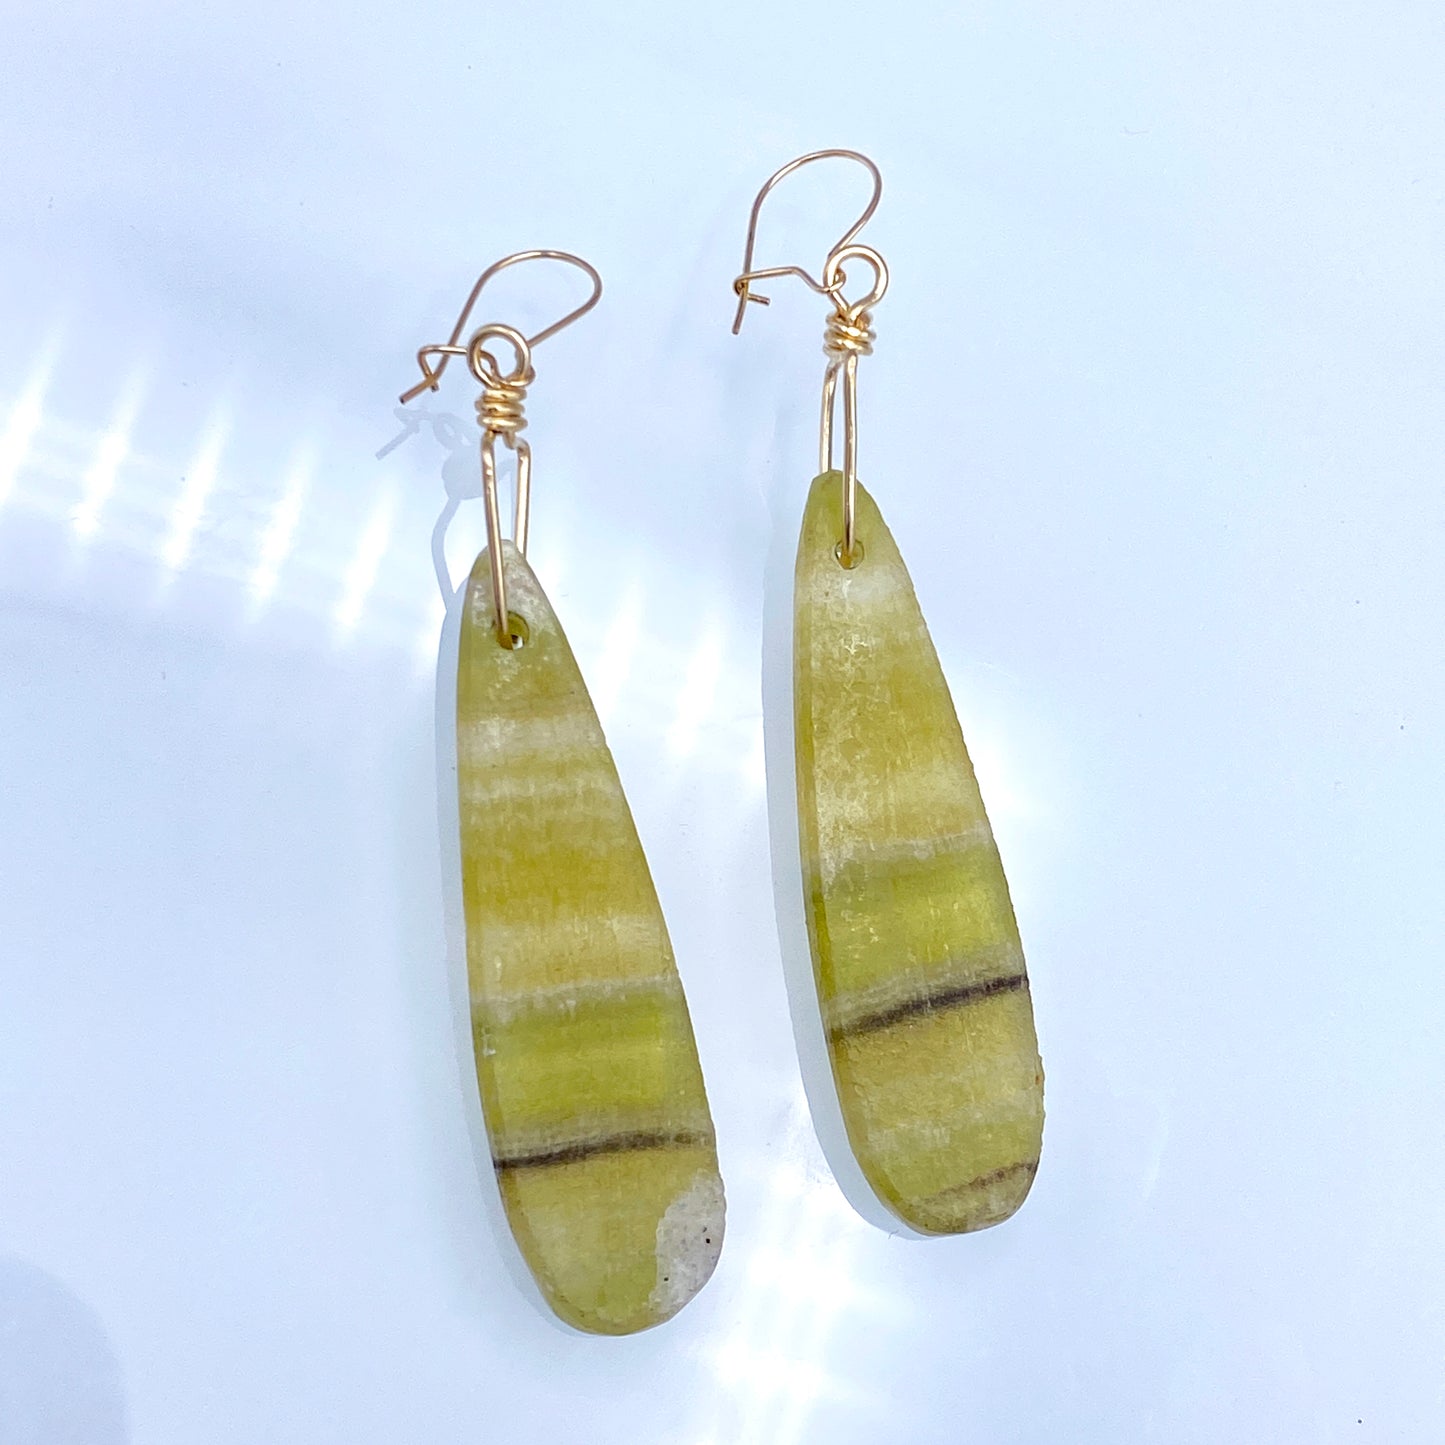 Yellow Fluorite gemstone Drop Earrings